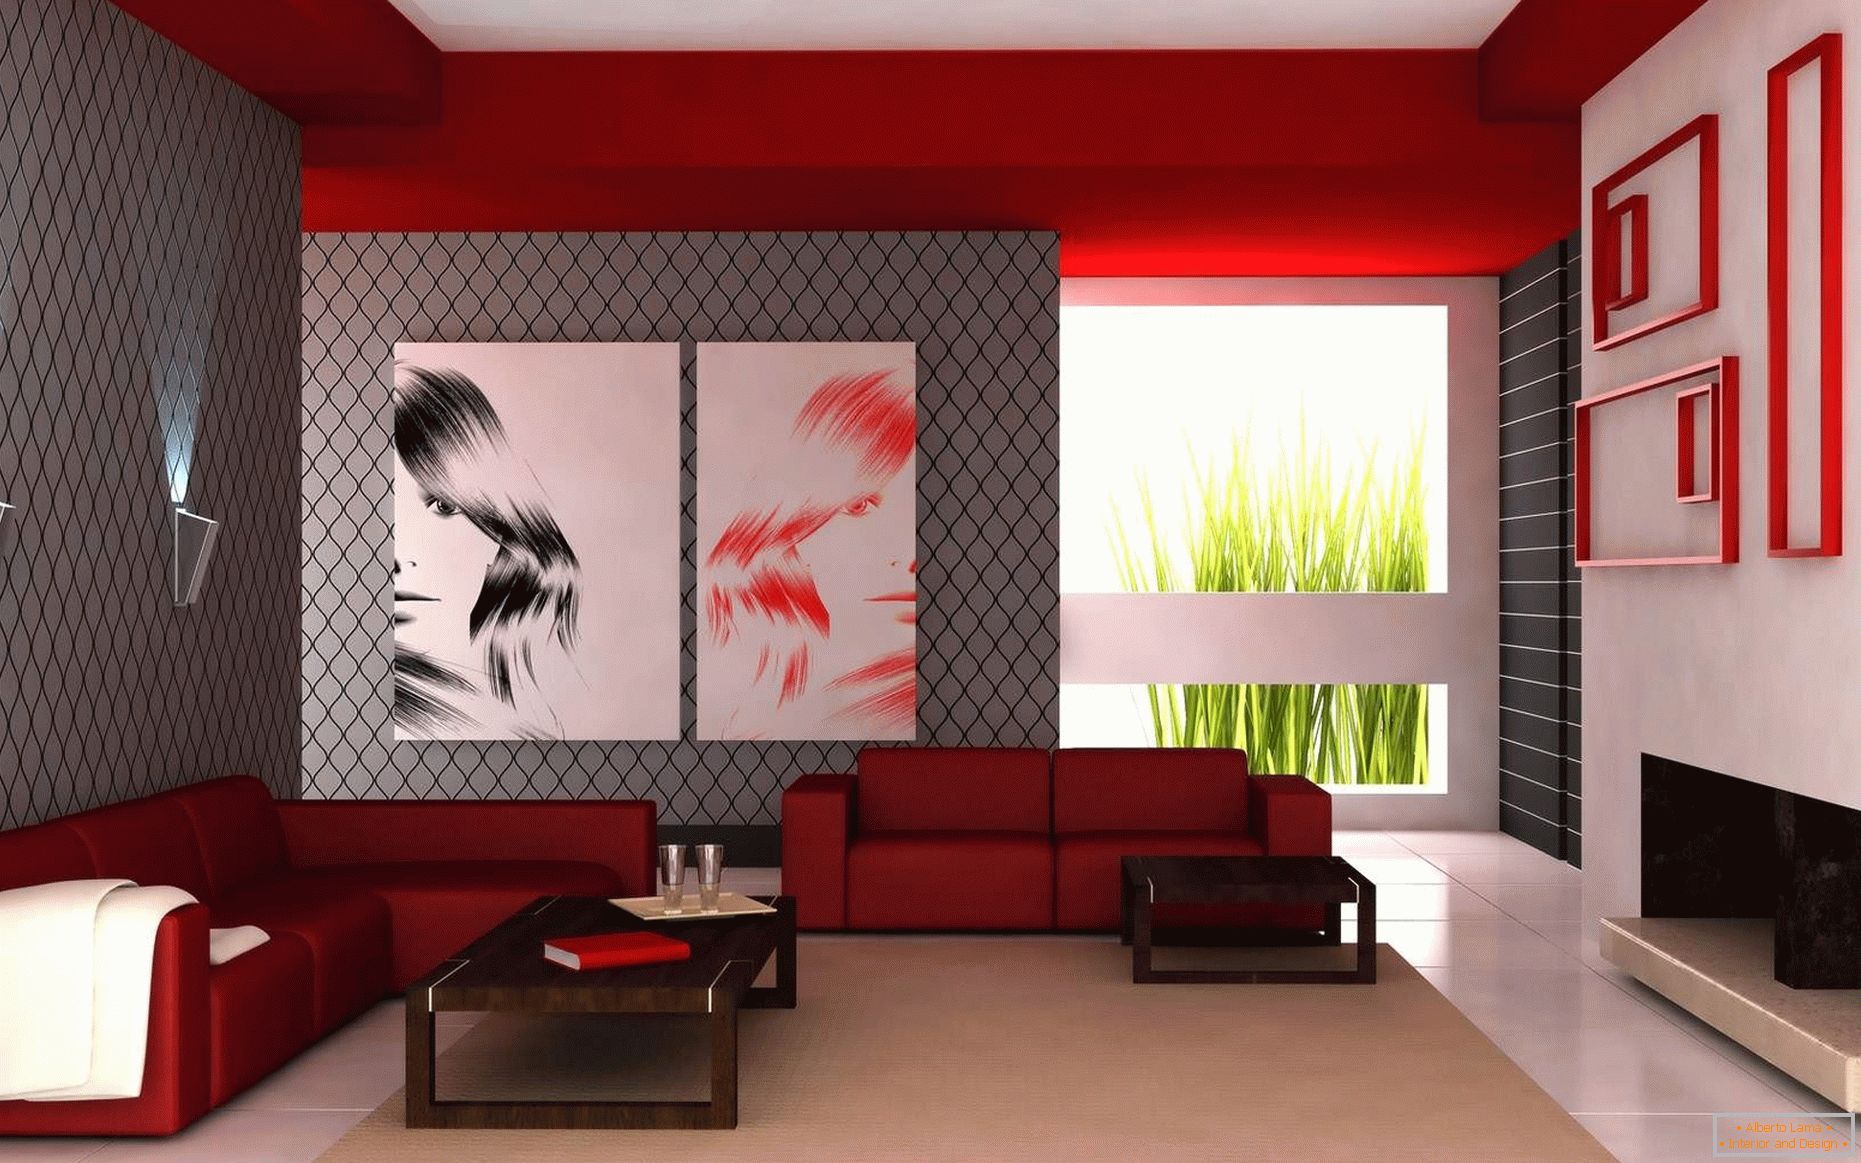 Die Kombination von weißen, roten und grauen Farben im Wohnzimmer